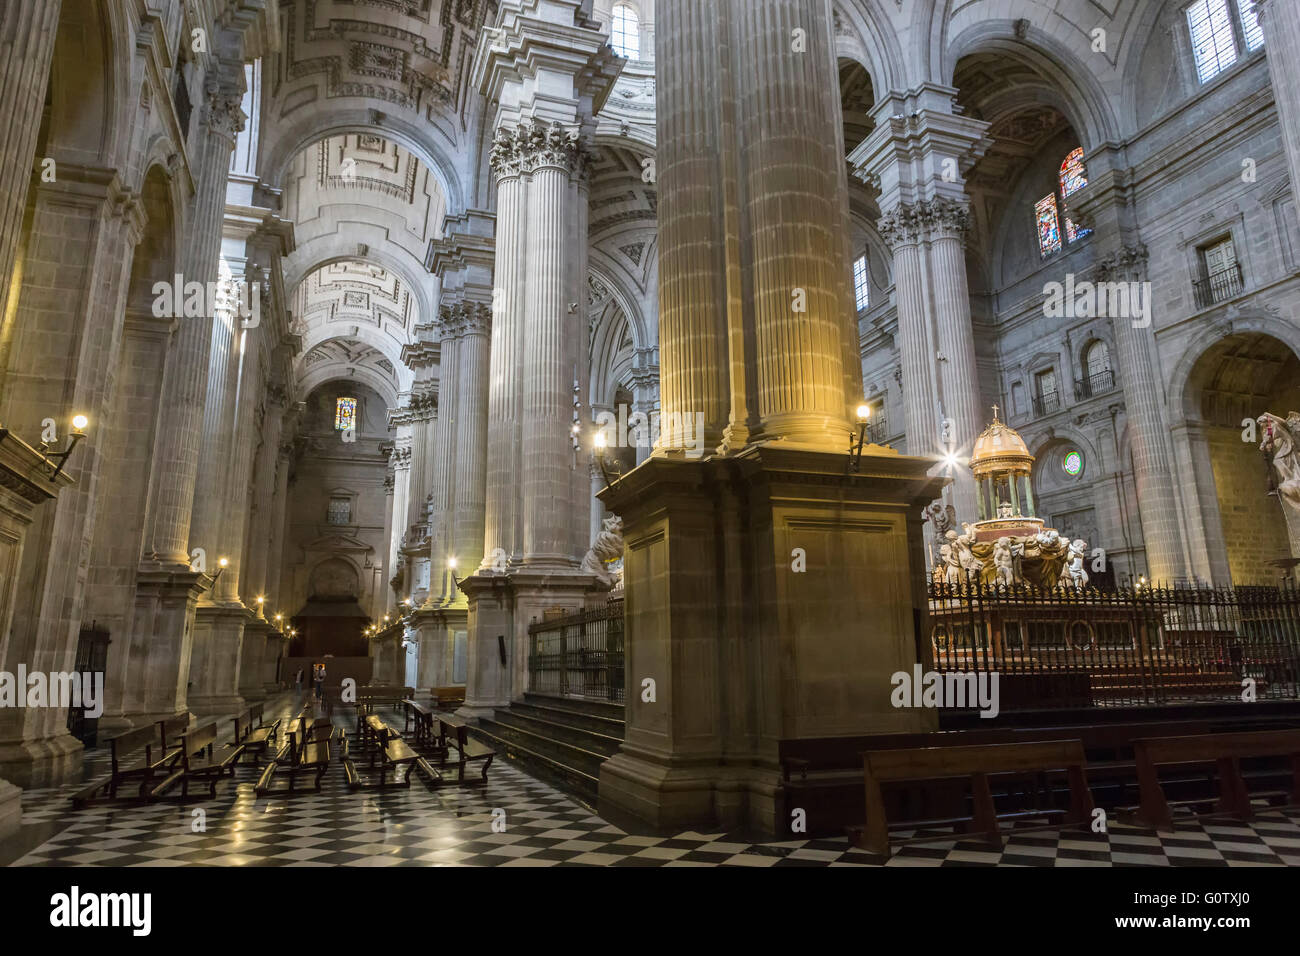 Detalle de la bóveda central de la nave principal que cubre el coro de la Catedral de Jaén, obra de Andrés de Vandelvira, España Foto de stock